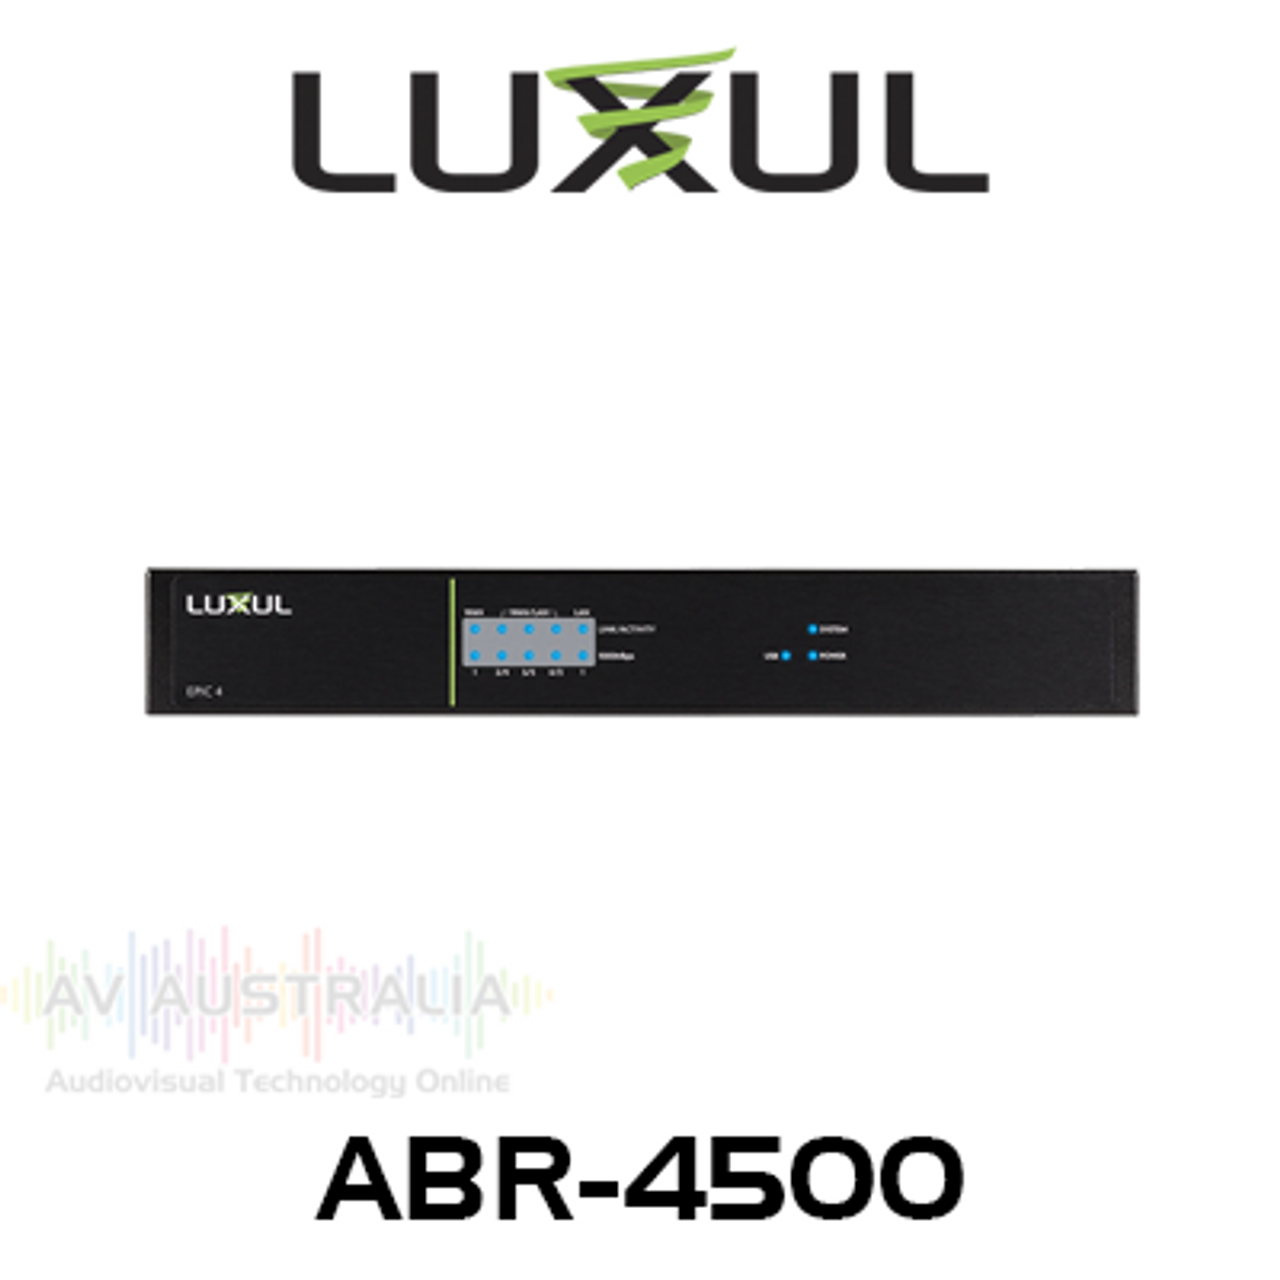 Luxul Epic 4 ABR-4500 Multi-WAN Load Balancing Gigabit VPN Router